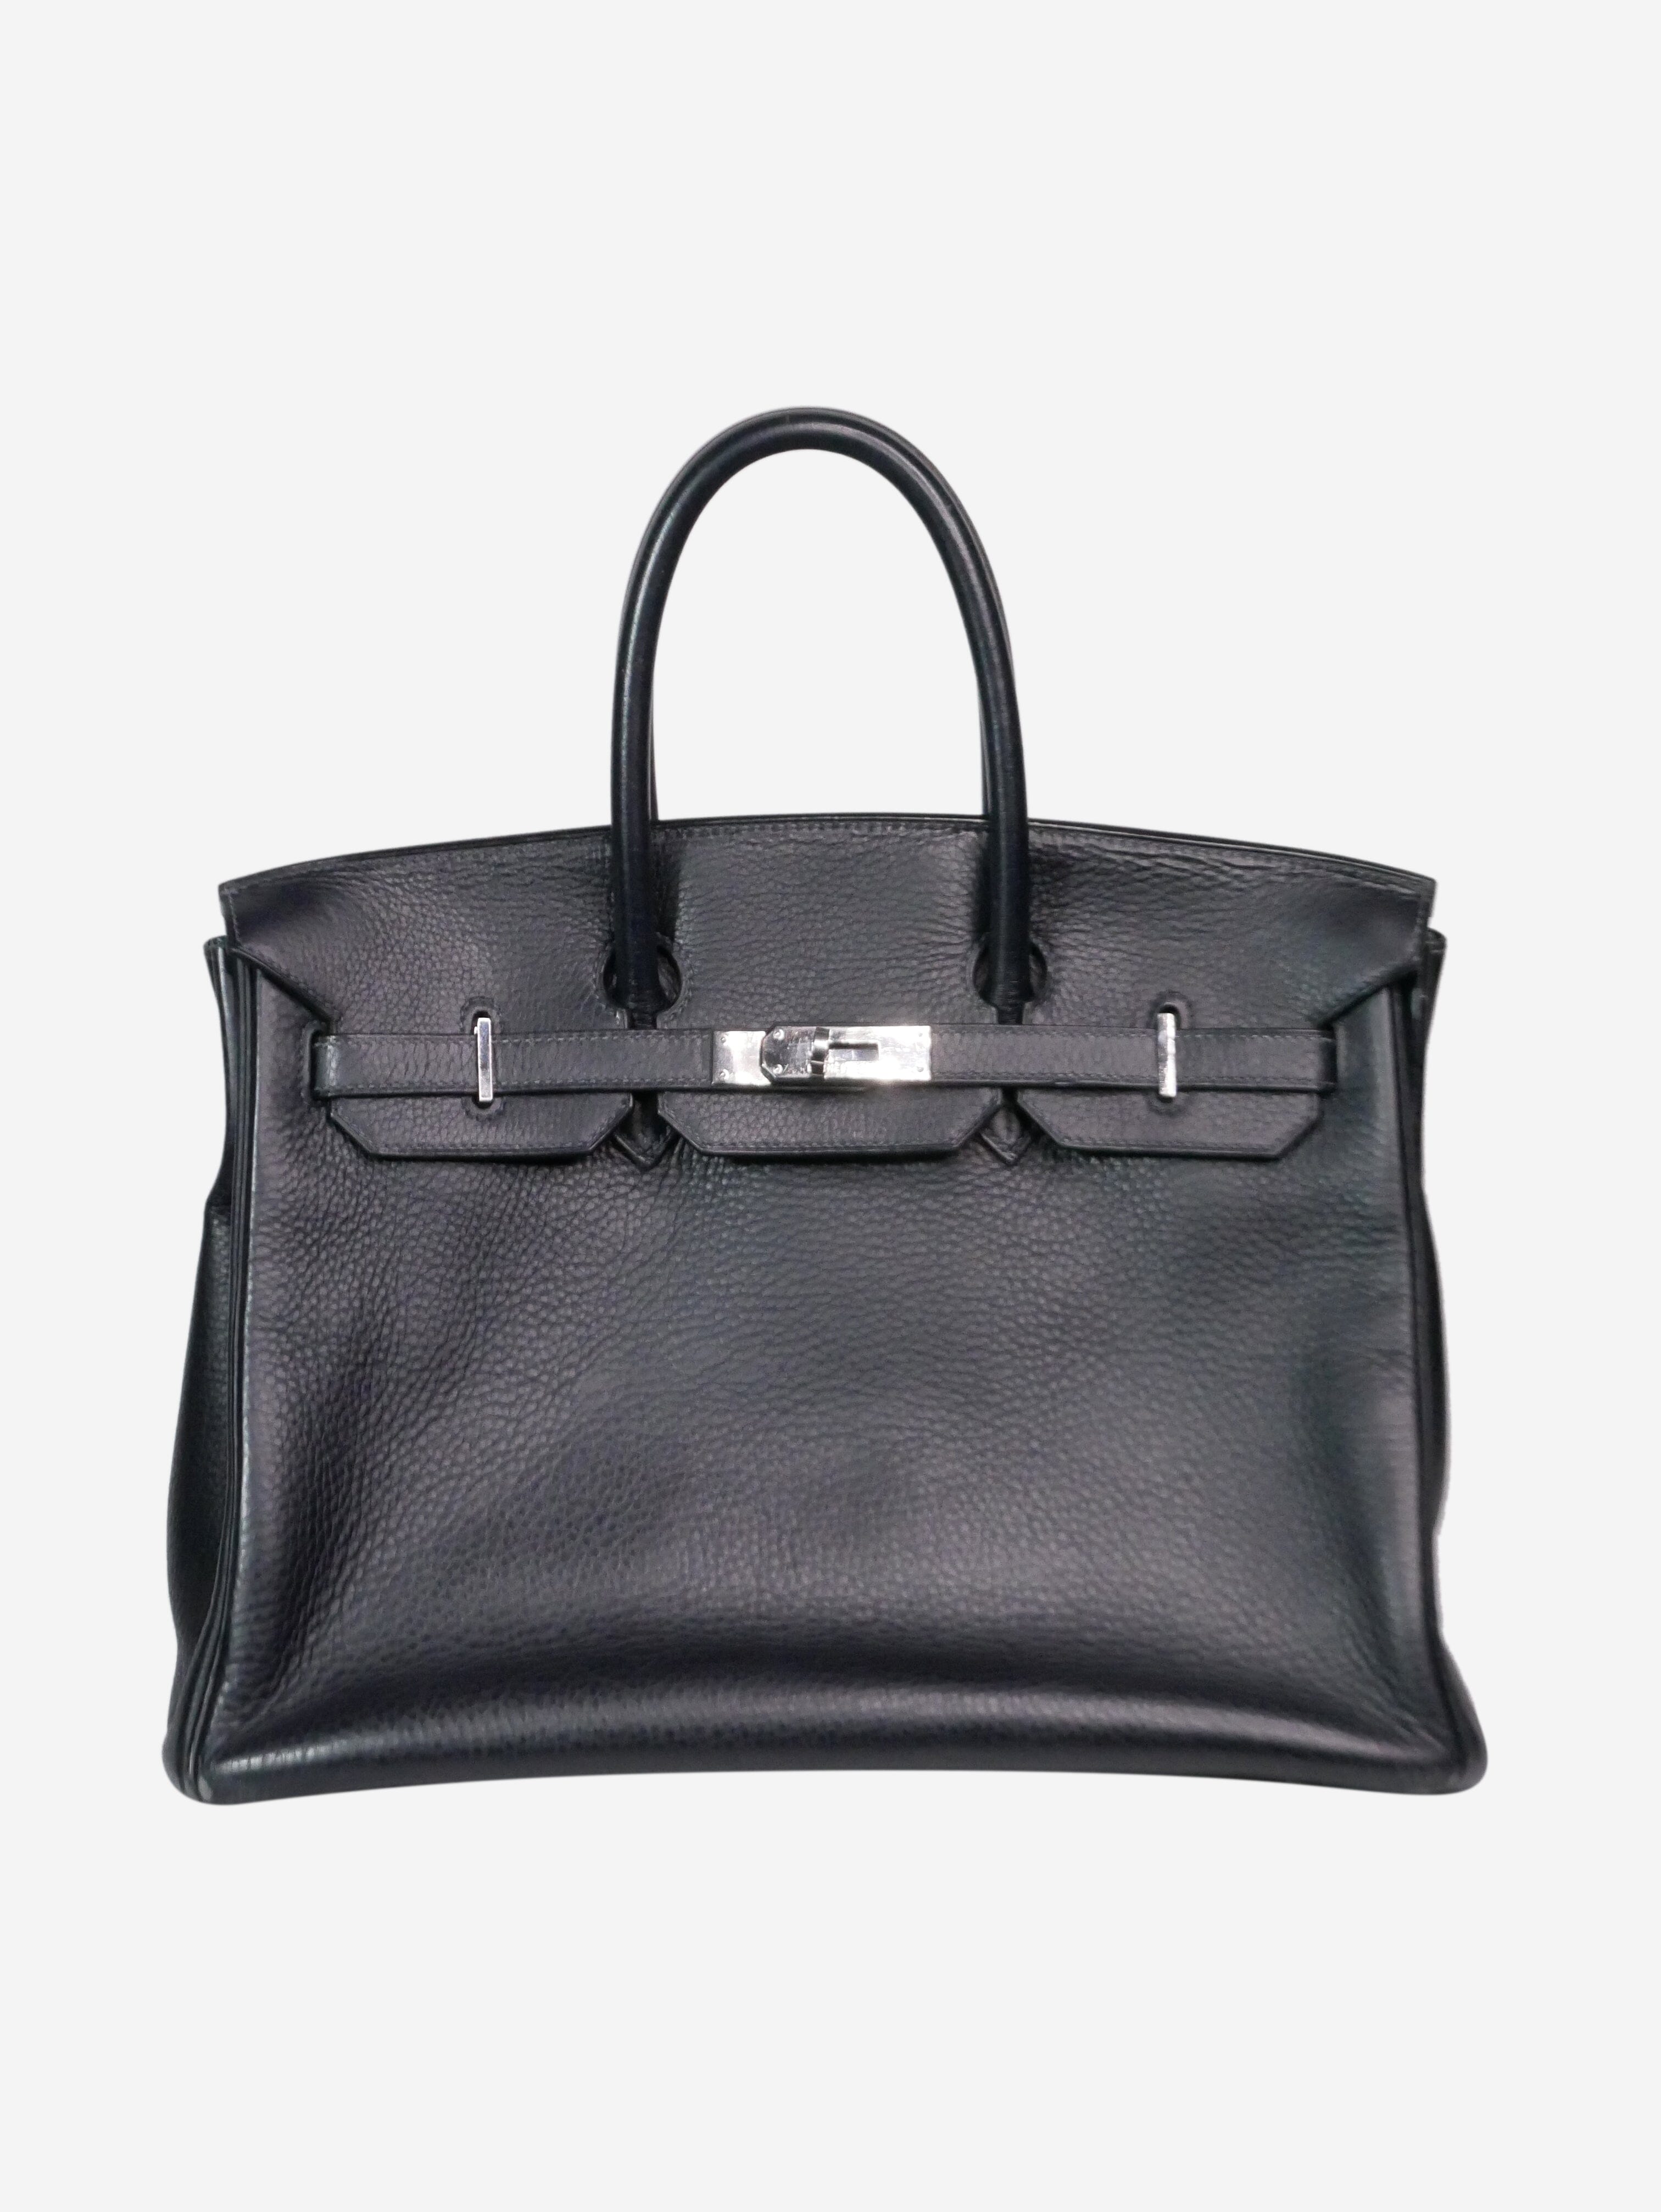 Hermes Iconic Women's Bag Handbag Togo Leather Birkin 40 Sac Shoulder